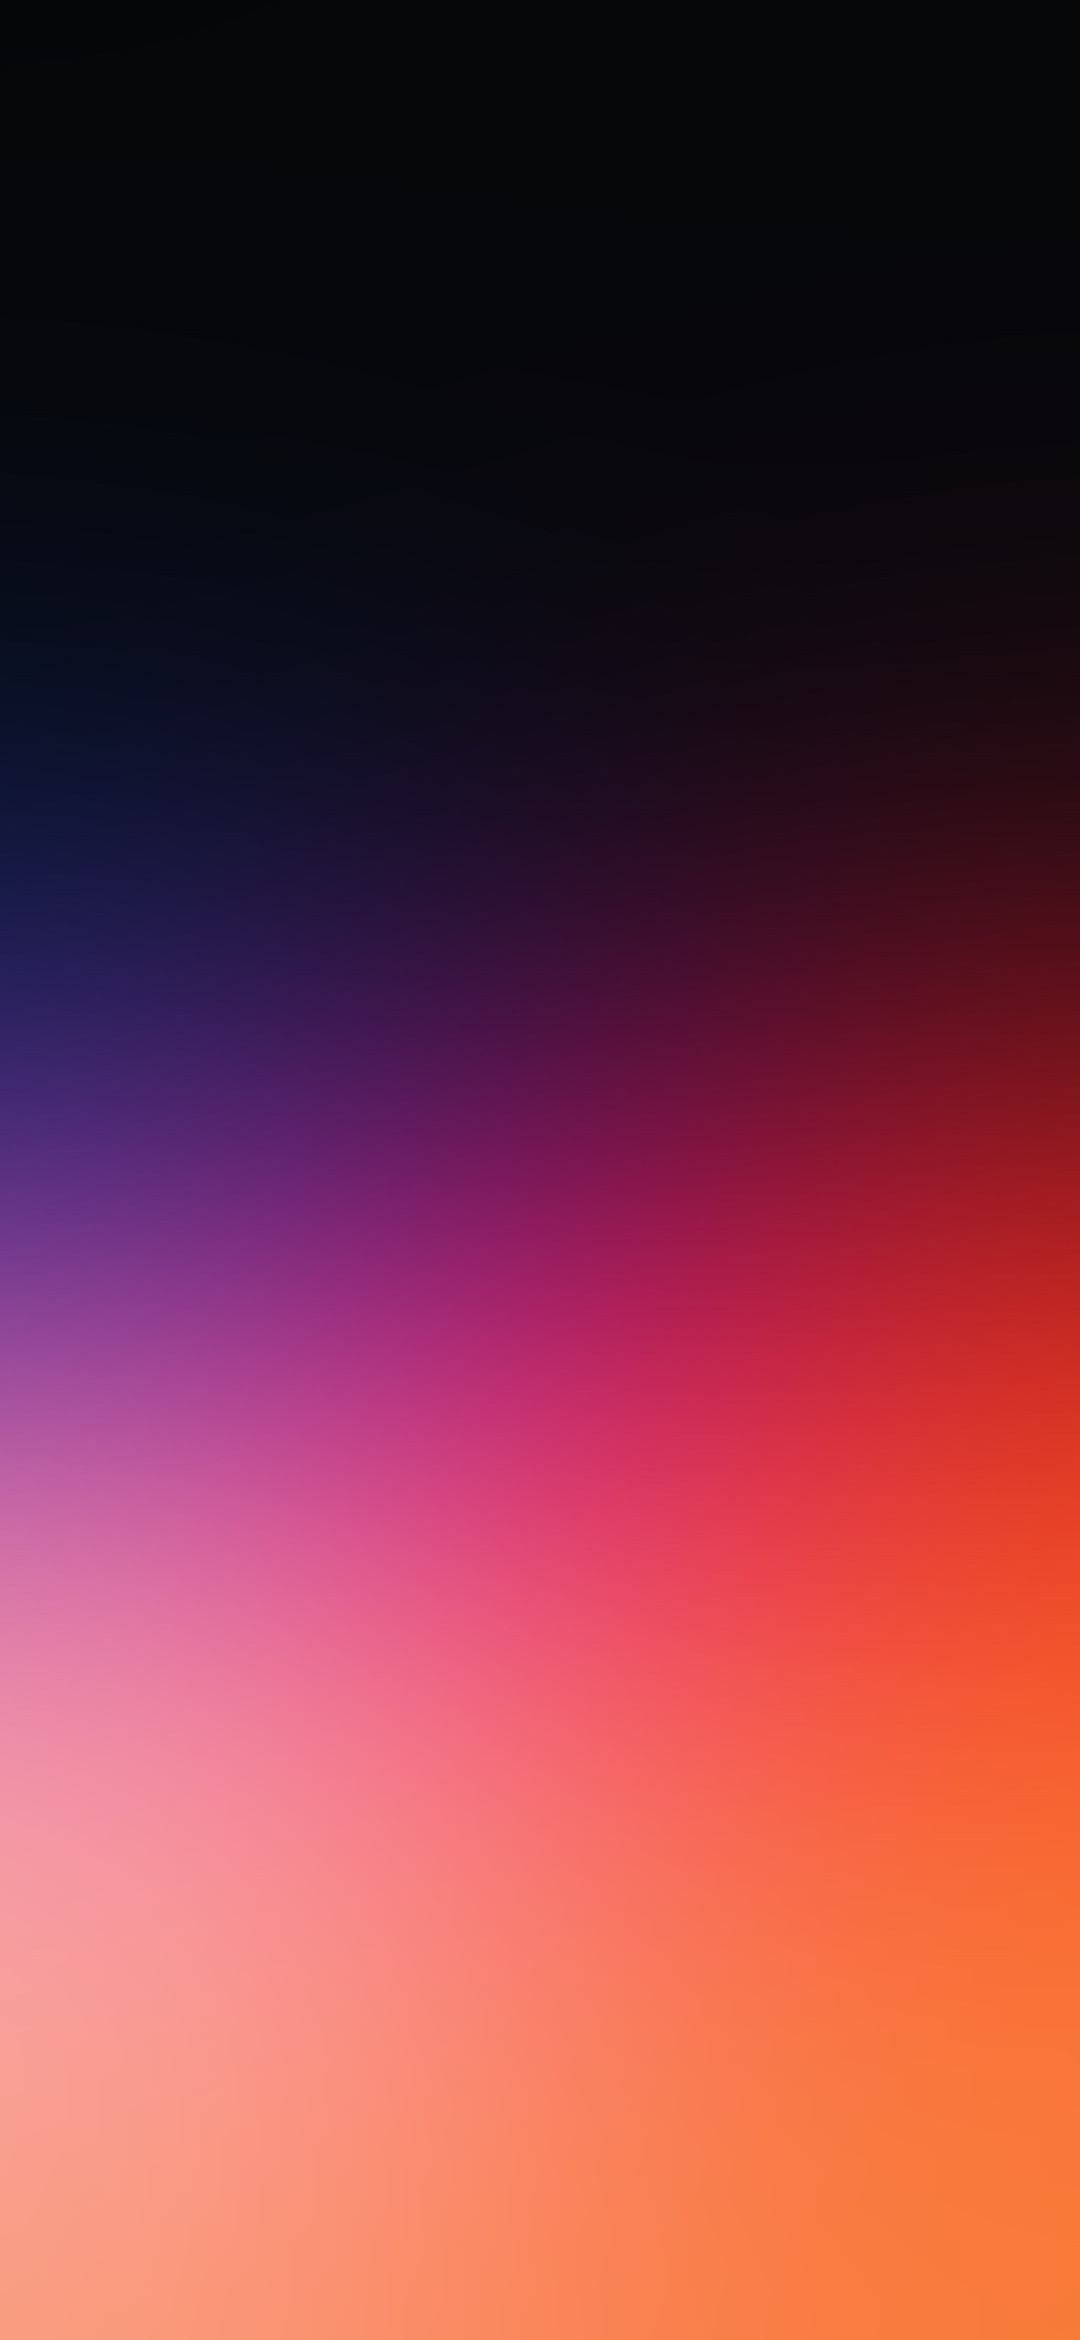 シンプルで綺麗な紫と薄いオレンジのグラデーション Redmi 9t Android スマホ壁紙 待ち受け スマラン